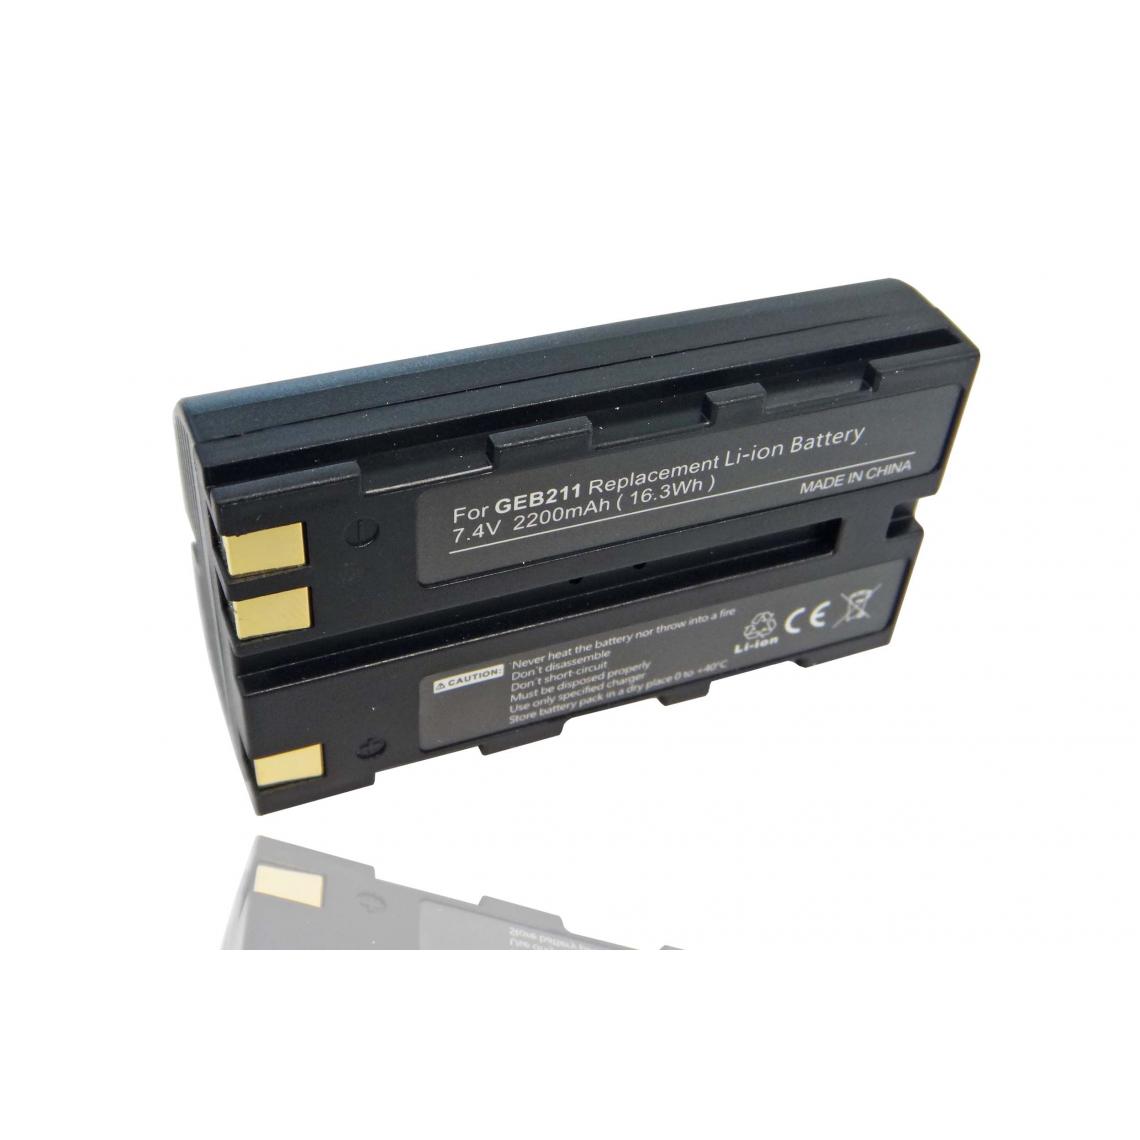 Vhbw - vhbw Batterie compatible avec Leica Viva GS08 plus NetRover dispositif de mesure laser, outil de mesure (2200mAh, 7,4V, Li-ion) - Piles rechargeables